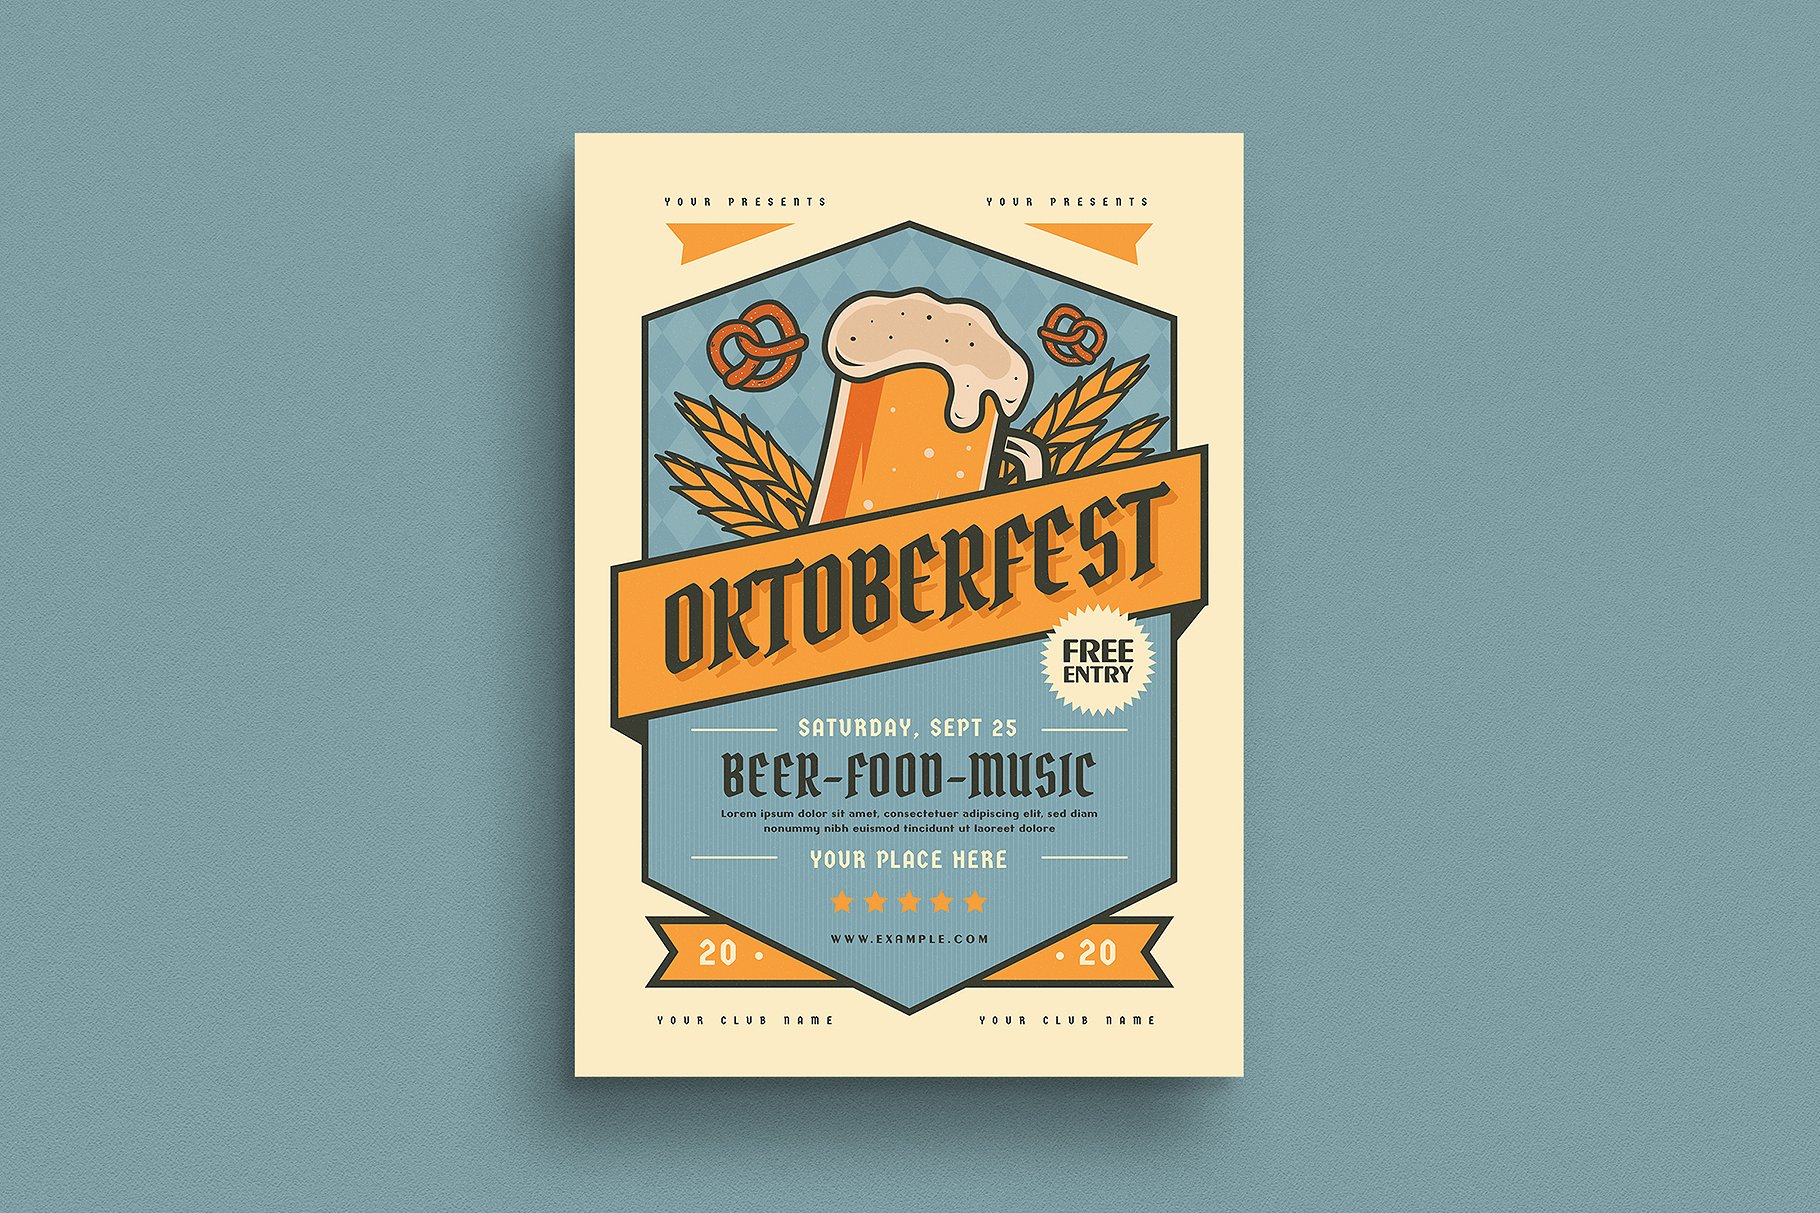 啤酒节活动传单设计 Oktoberfest Event Fl